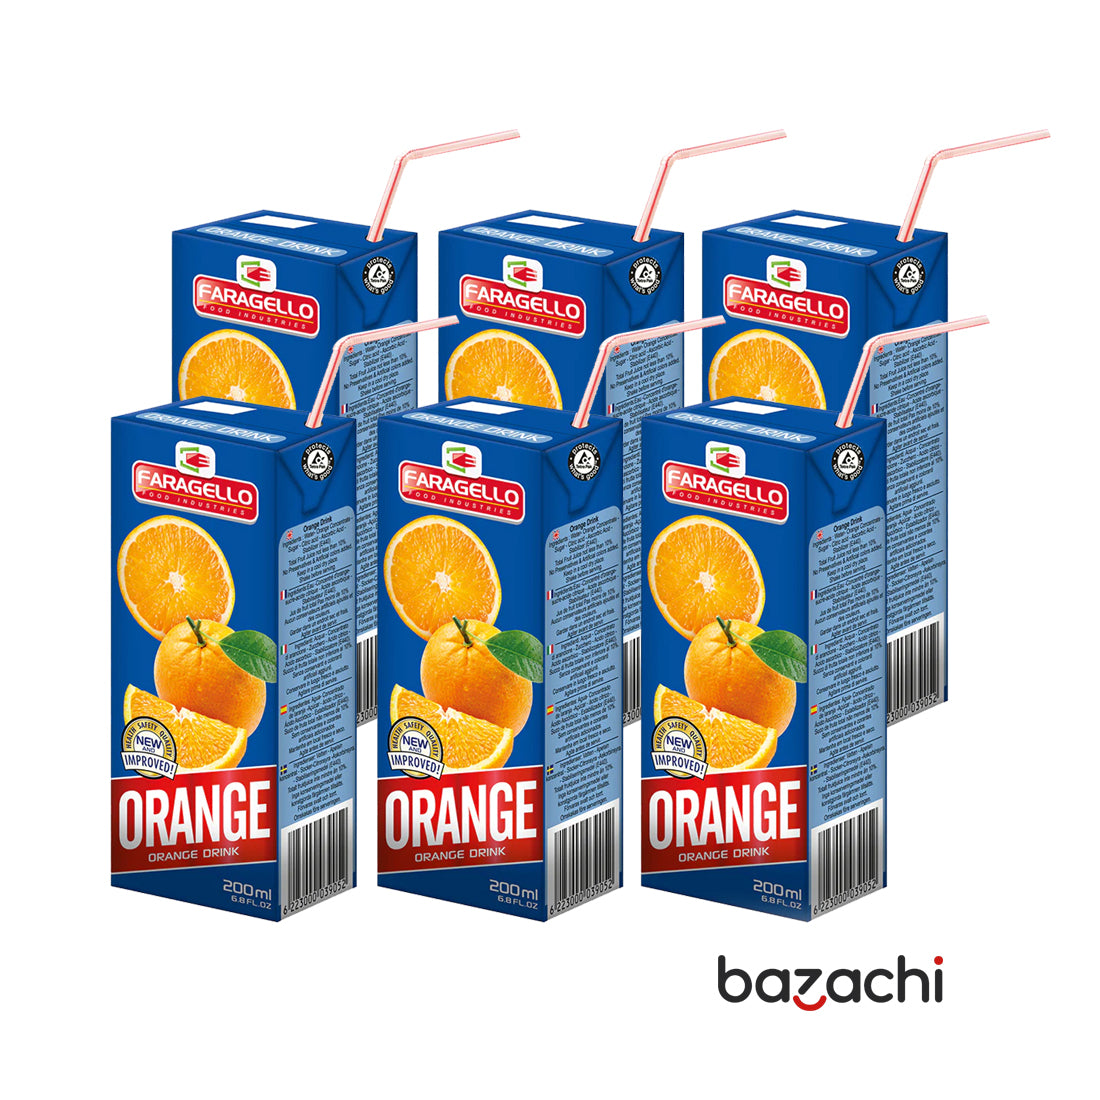 Faragello Orange Boisson Premium Fruit Juice(200ml)